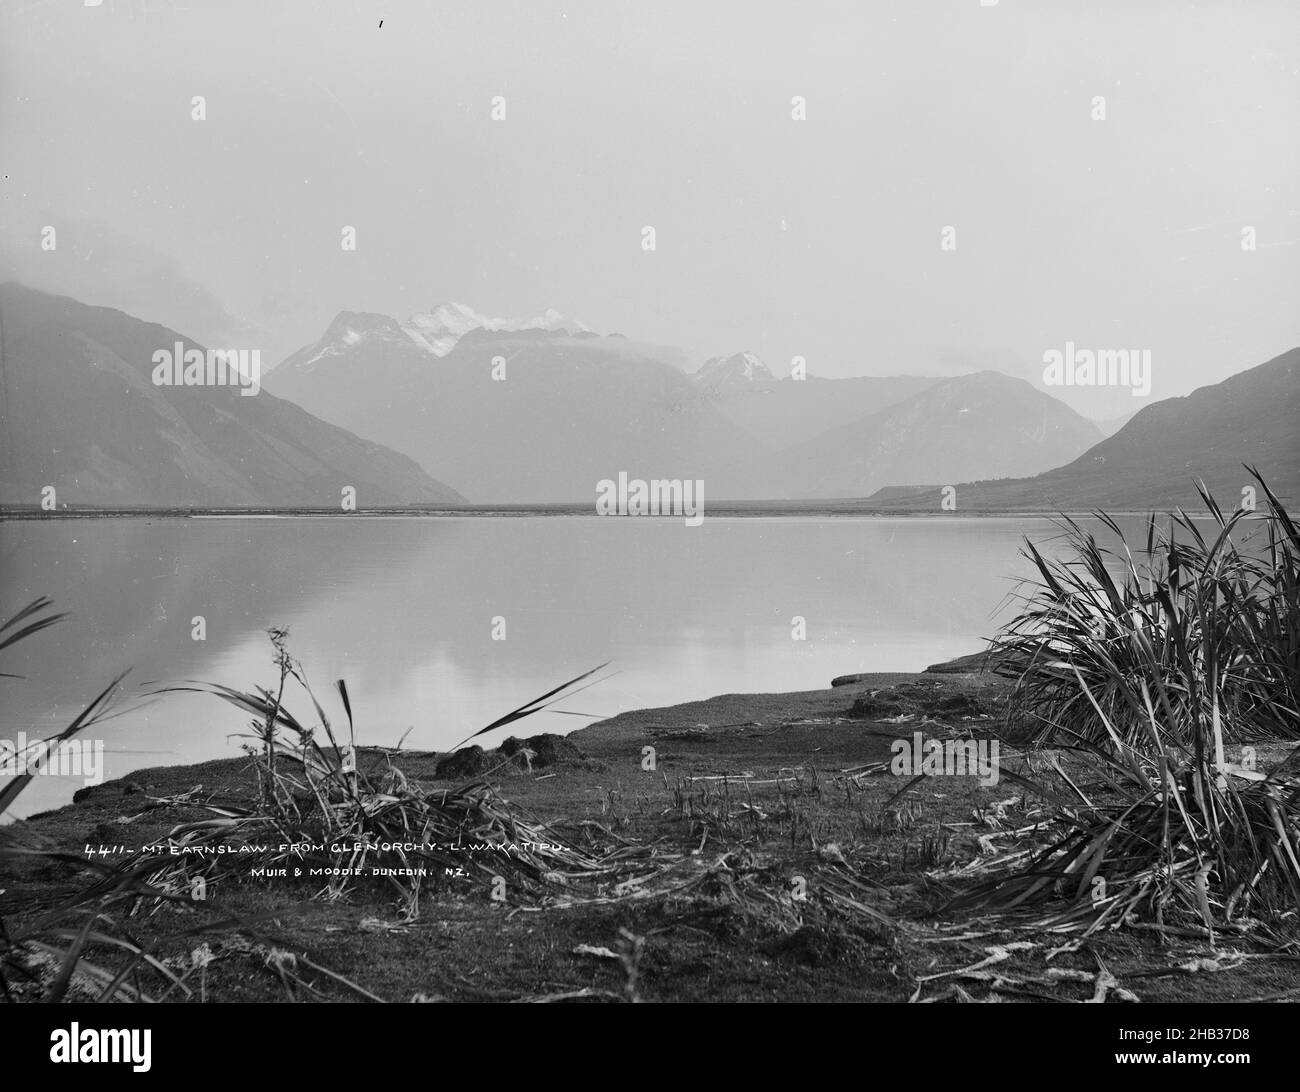 Mont Earnlsaw, de Glenorchy, lac Wakatipu, studio Burton Brothers, studio de photographie,1886, Dunedin, photographie en noir et blanc, vue sur les eaux mortes d'un lac vers les montagnes enneigées.Des amas de végétation déchiquetées sont visibles sur la rive de sable au premier plan Banque D'Images